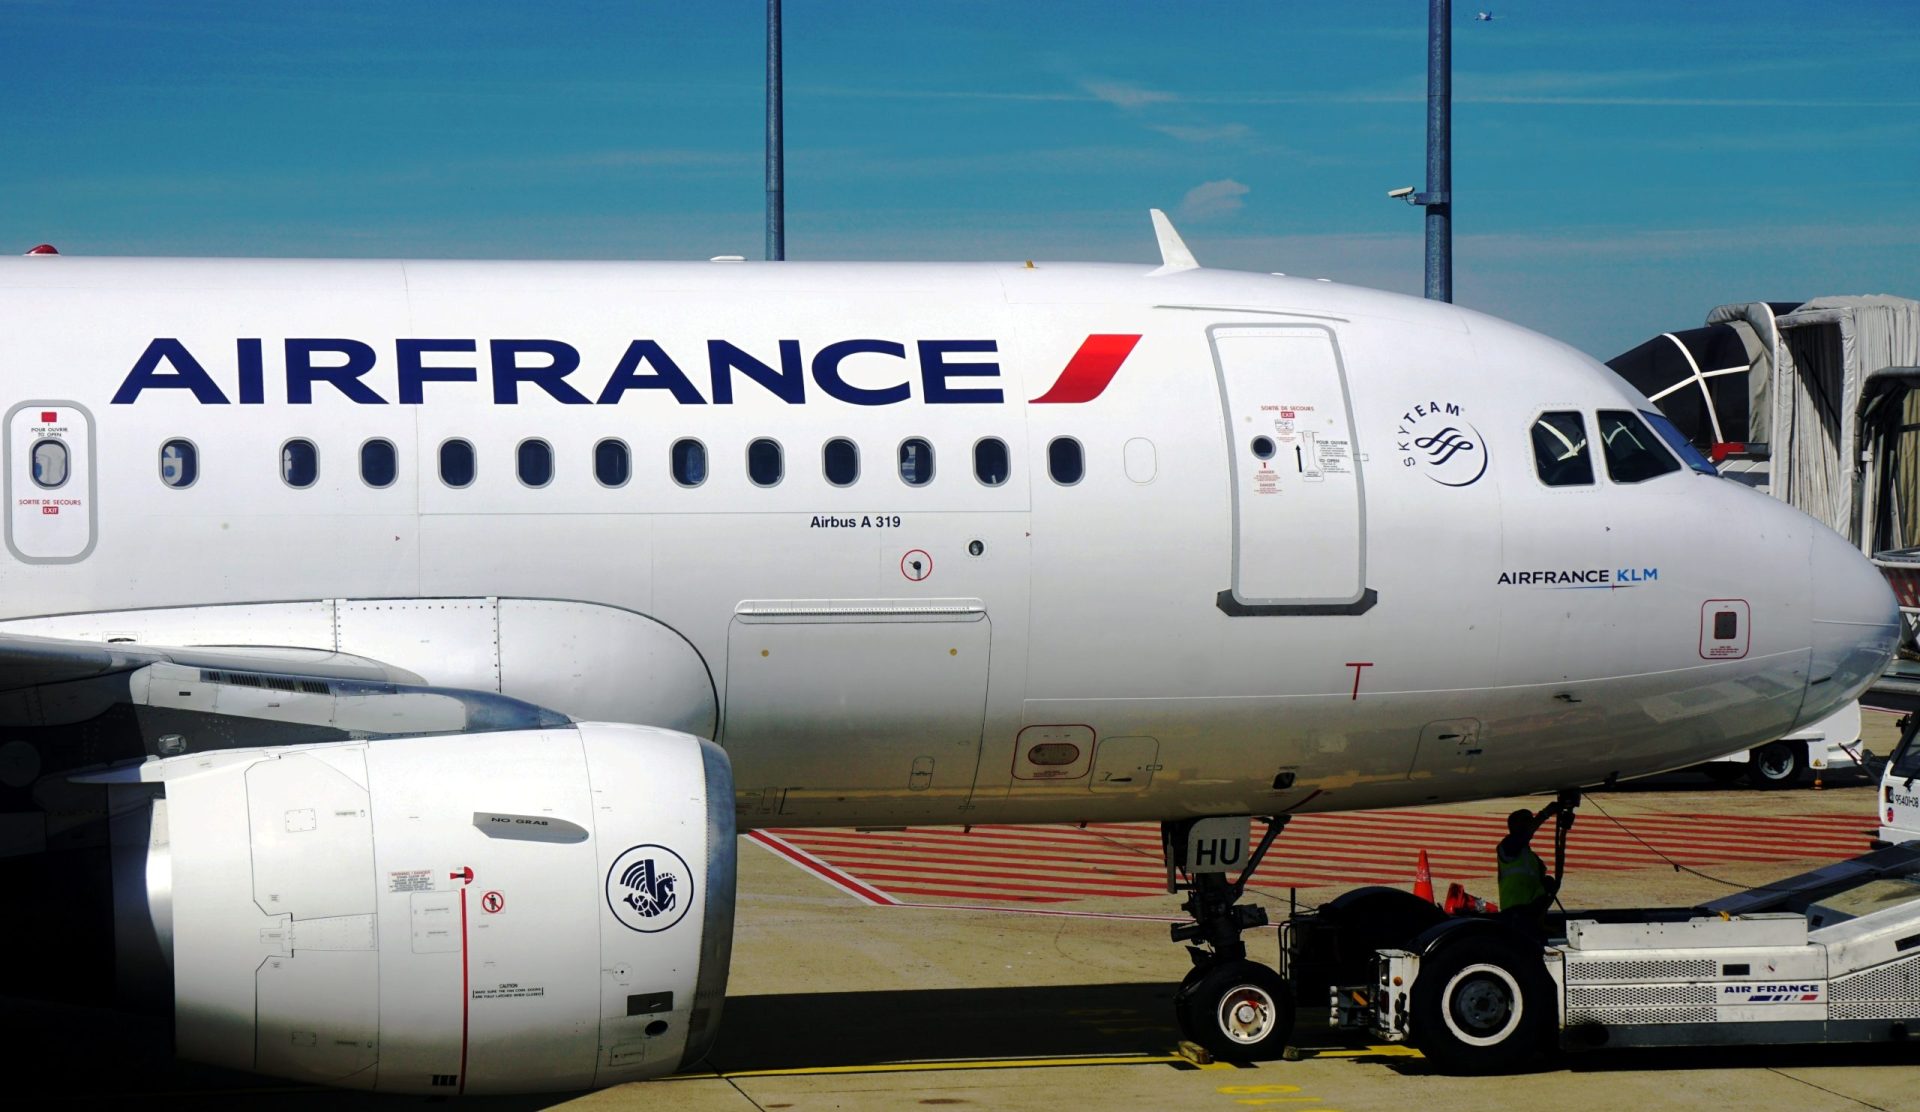 Quénia: Autoridades dizem ter encontrado uma bomba no avião da Air France